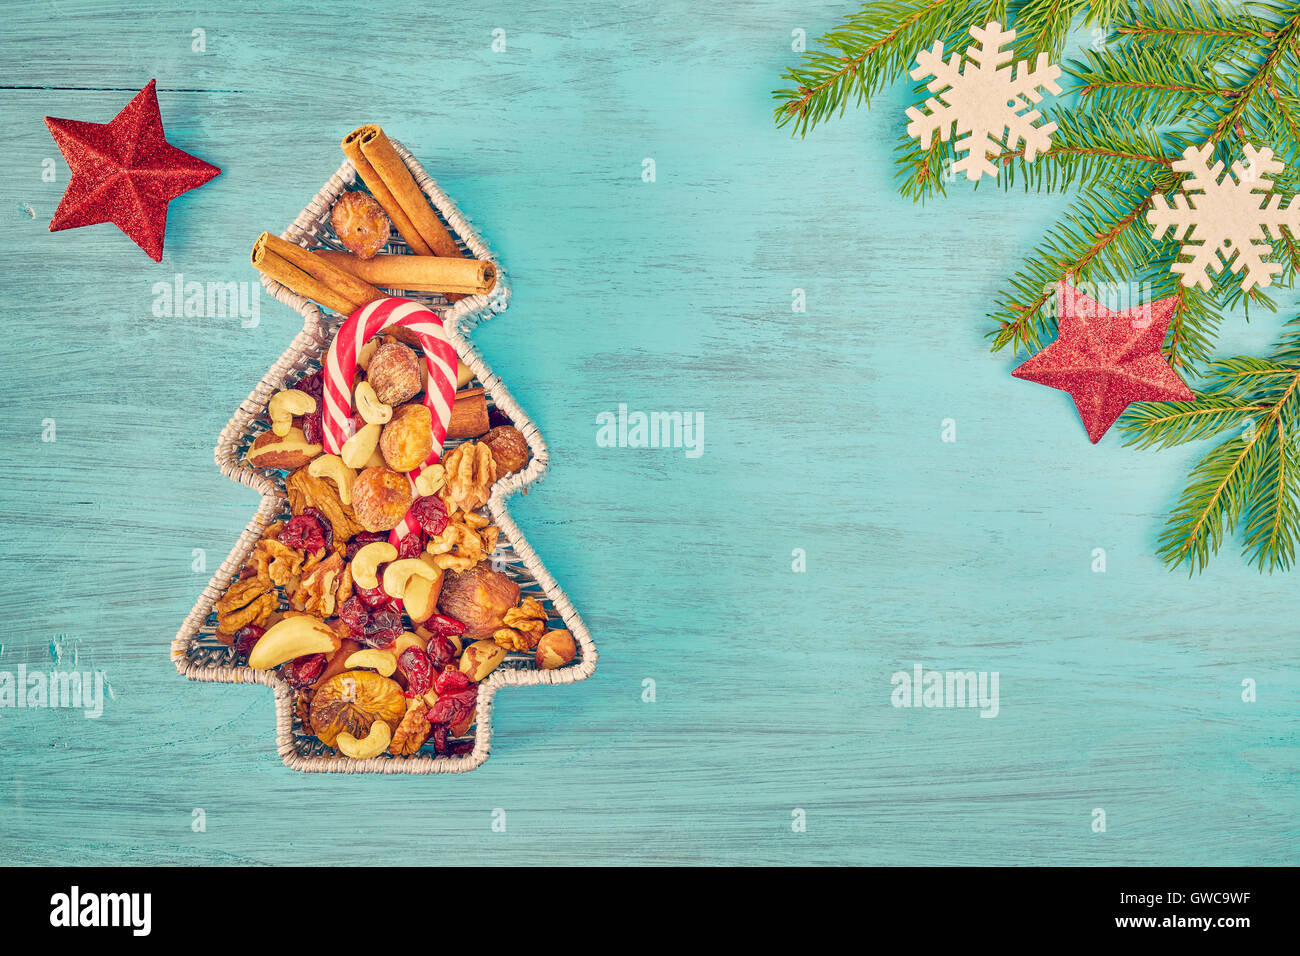 Tons rétro en forme d'arbre de Noël récipient rempli de fruits secs sur une table en bois rustique, vue supérieure avec copie espace Banque D'Images